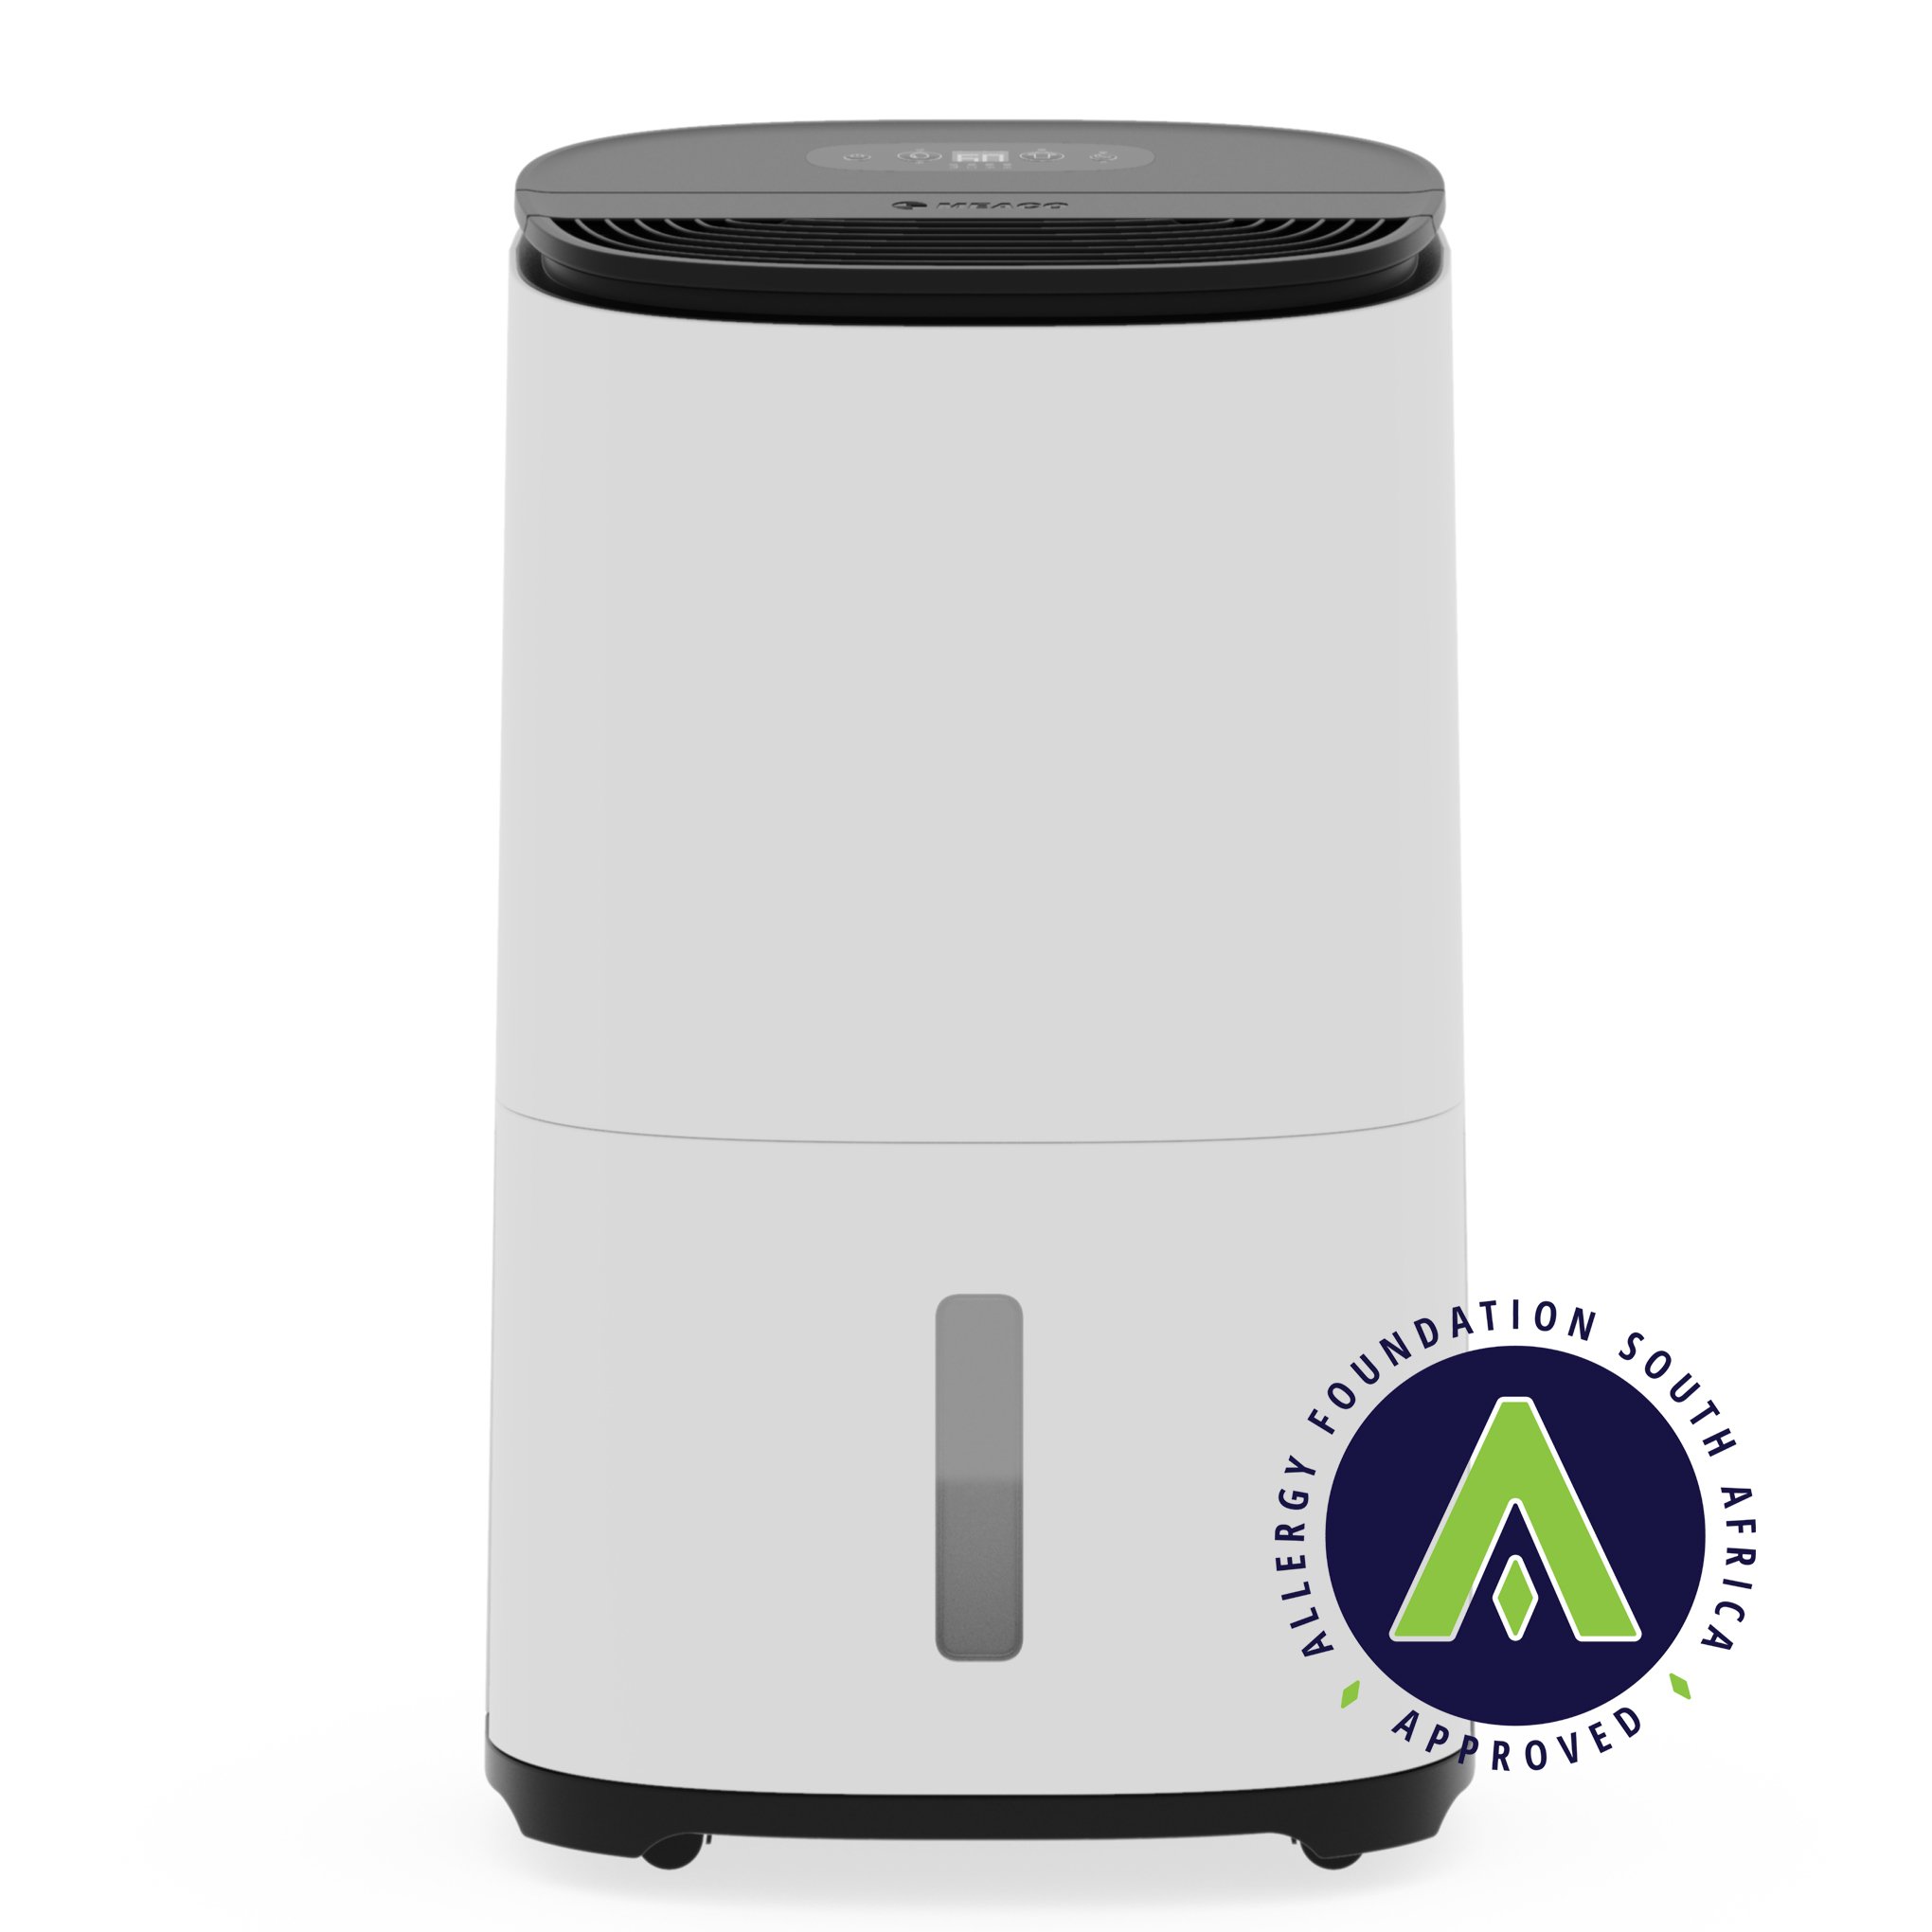 MeacoDry Arete® One 25L Dehumidifier / Air Purifier